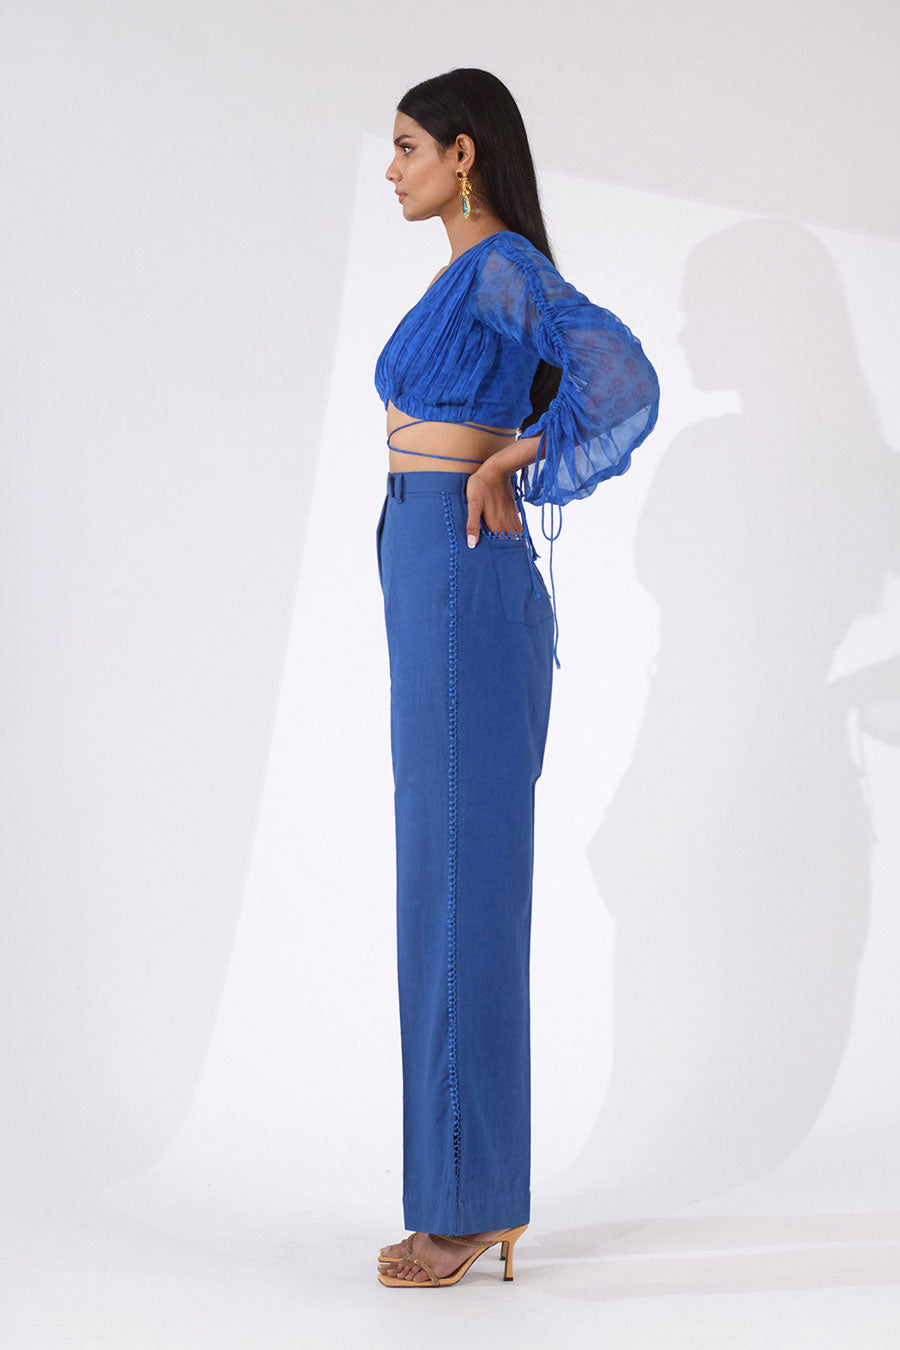 IVY - Blue Printed Top & Pants Co-Ord Set